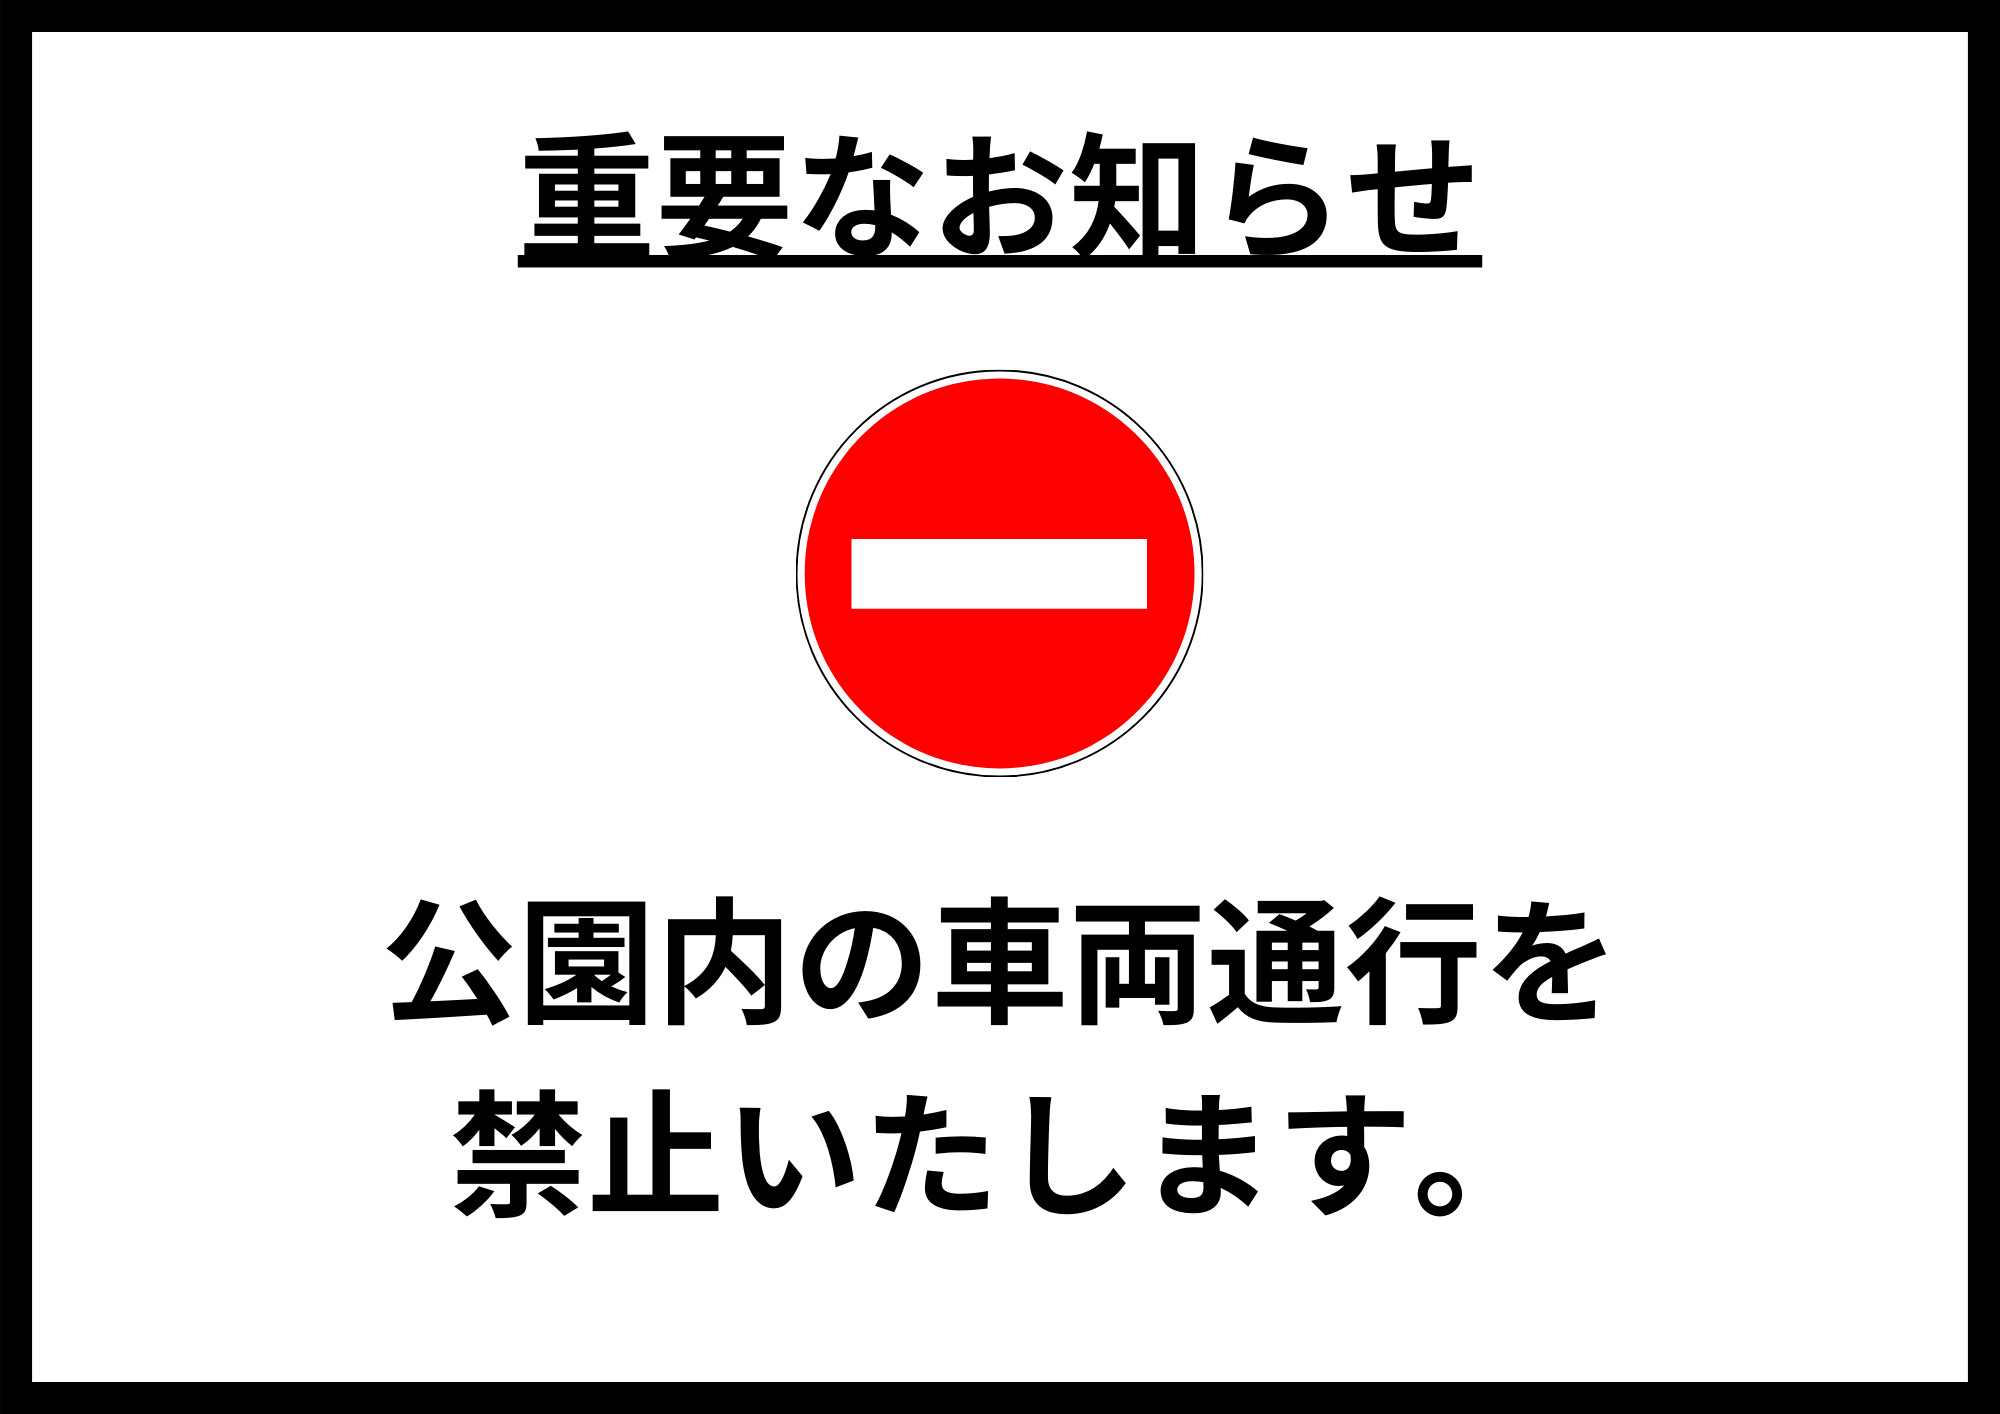 【重要】公園内車両通行禁止のお知らせ